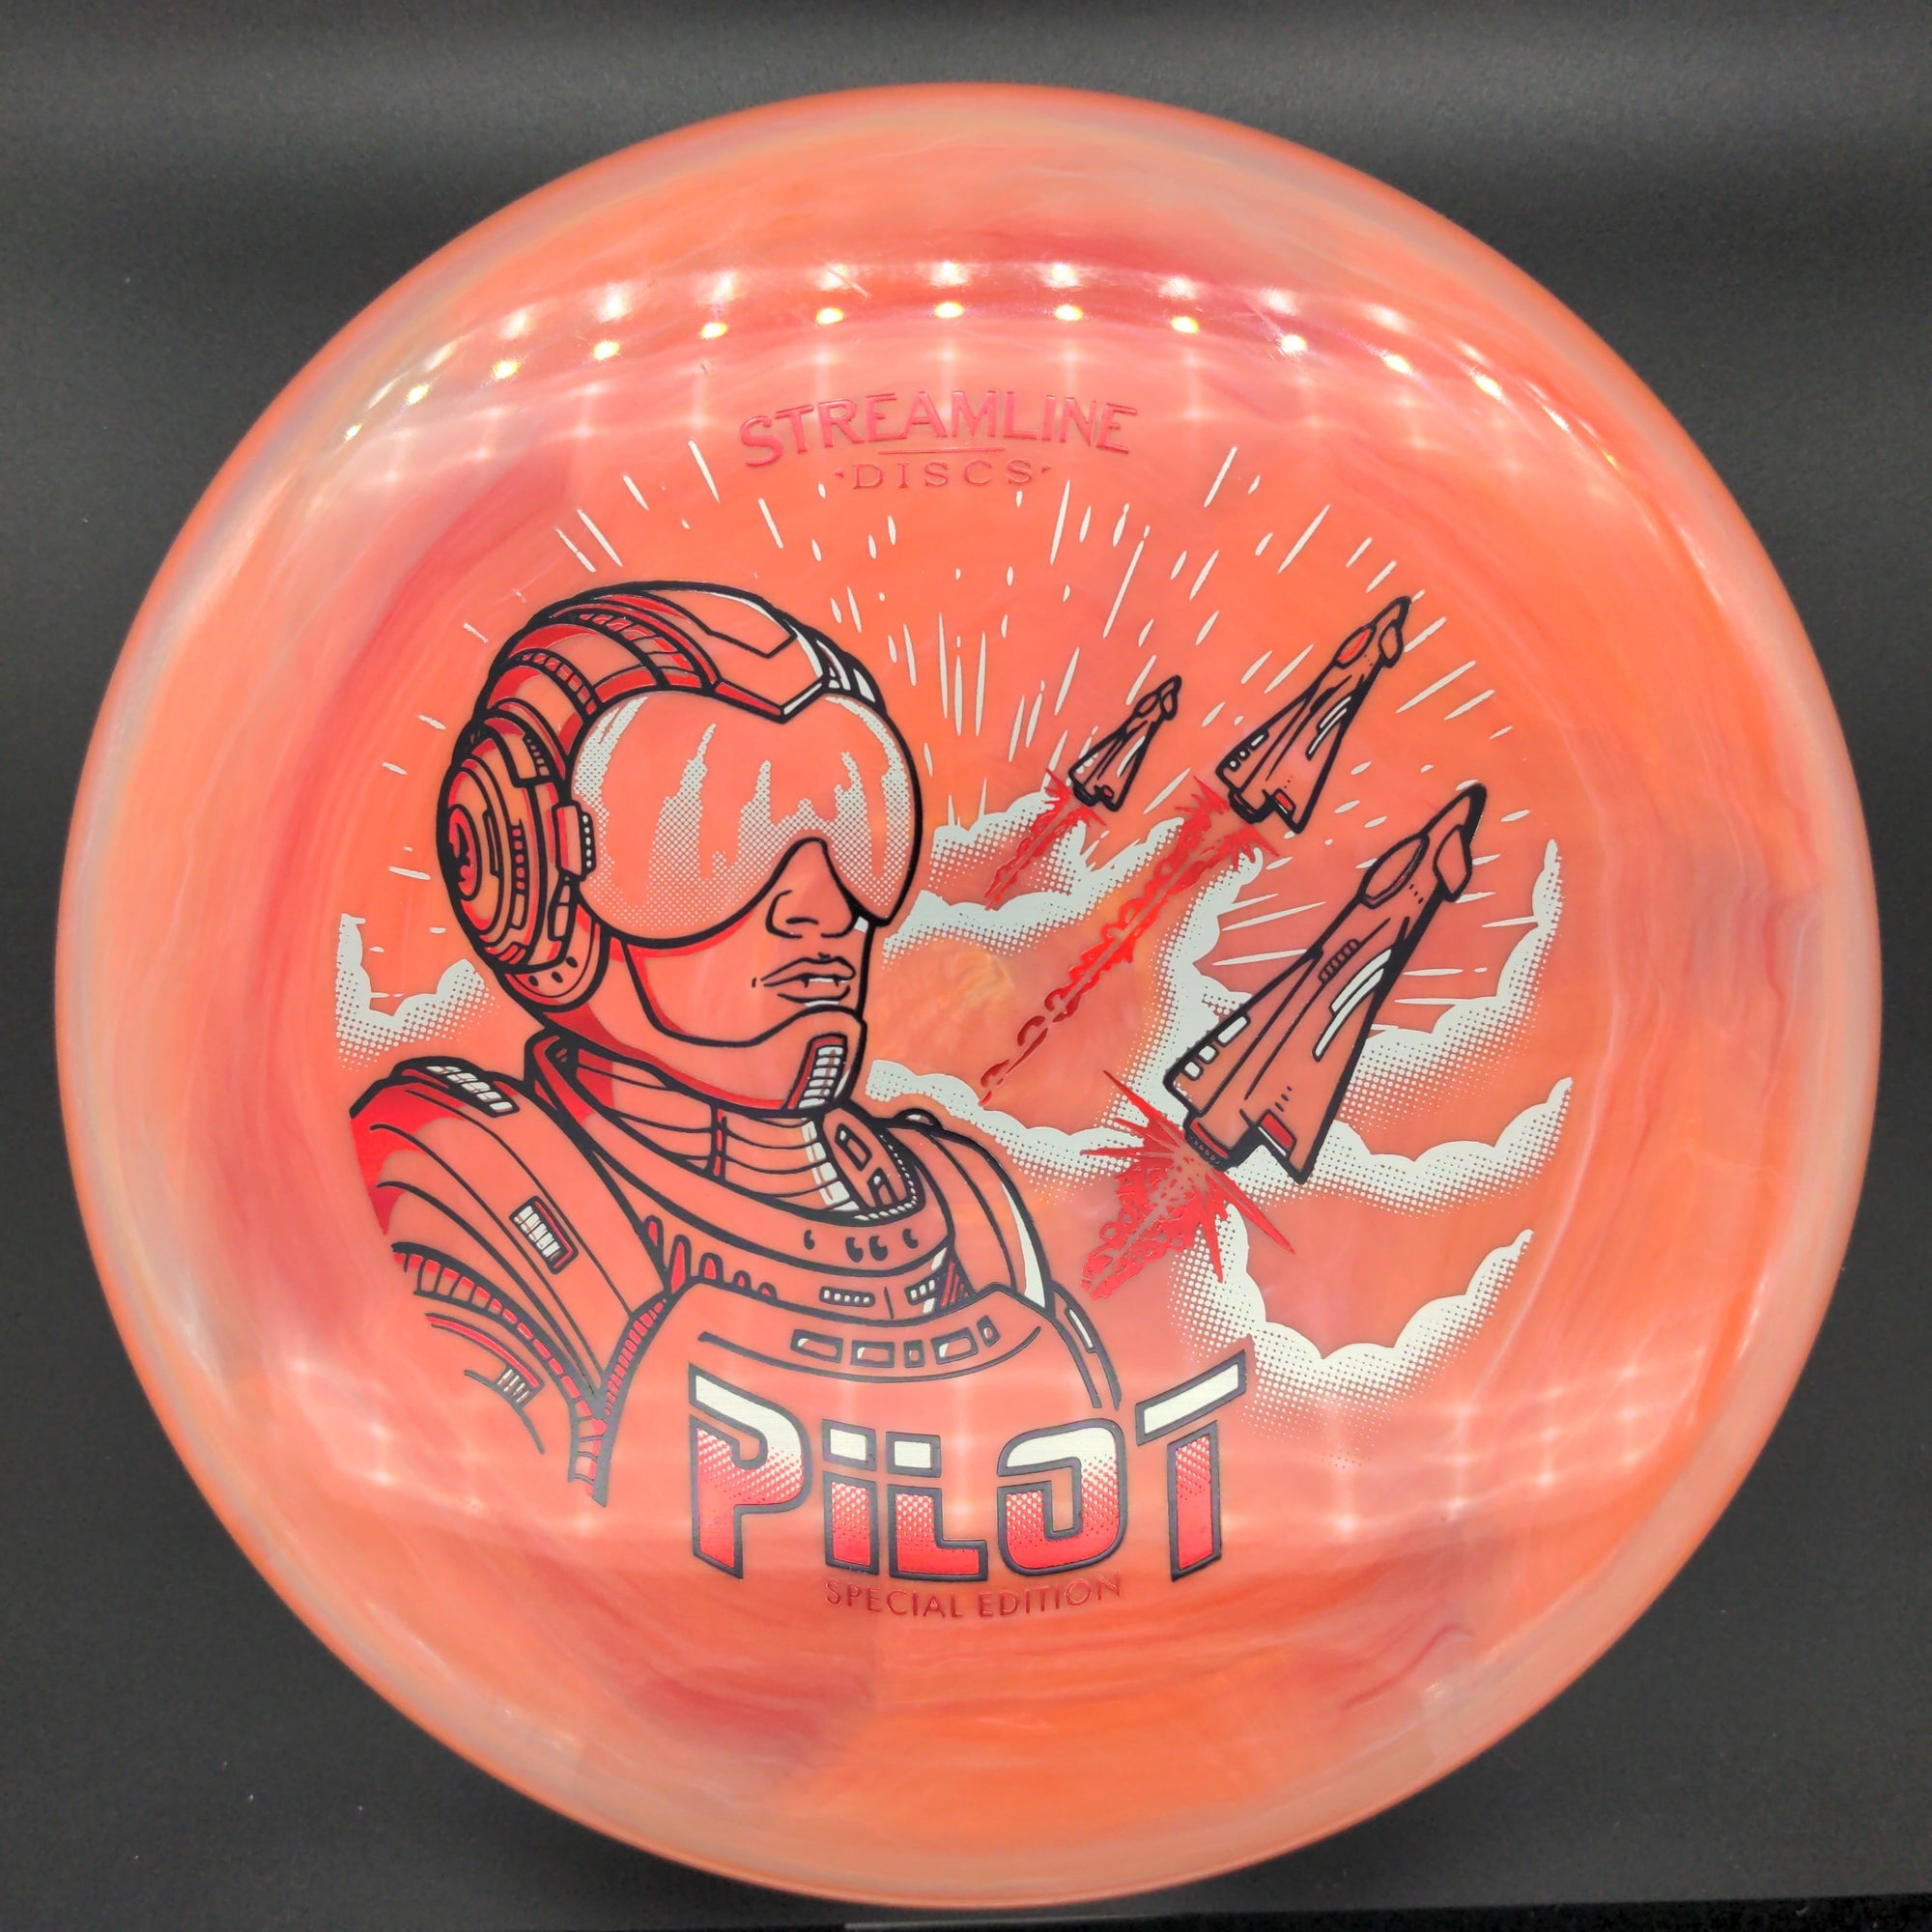 MVP Putter Pink 1 175g Neutron Pilot, Special Edition, Limited Run